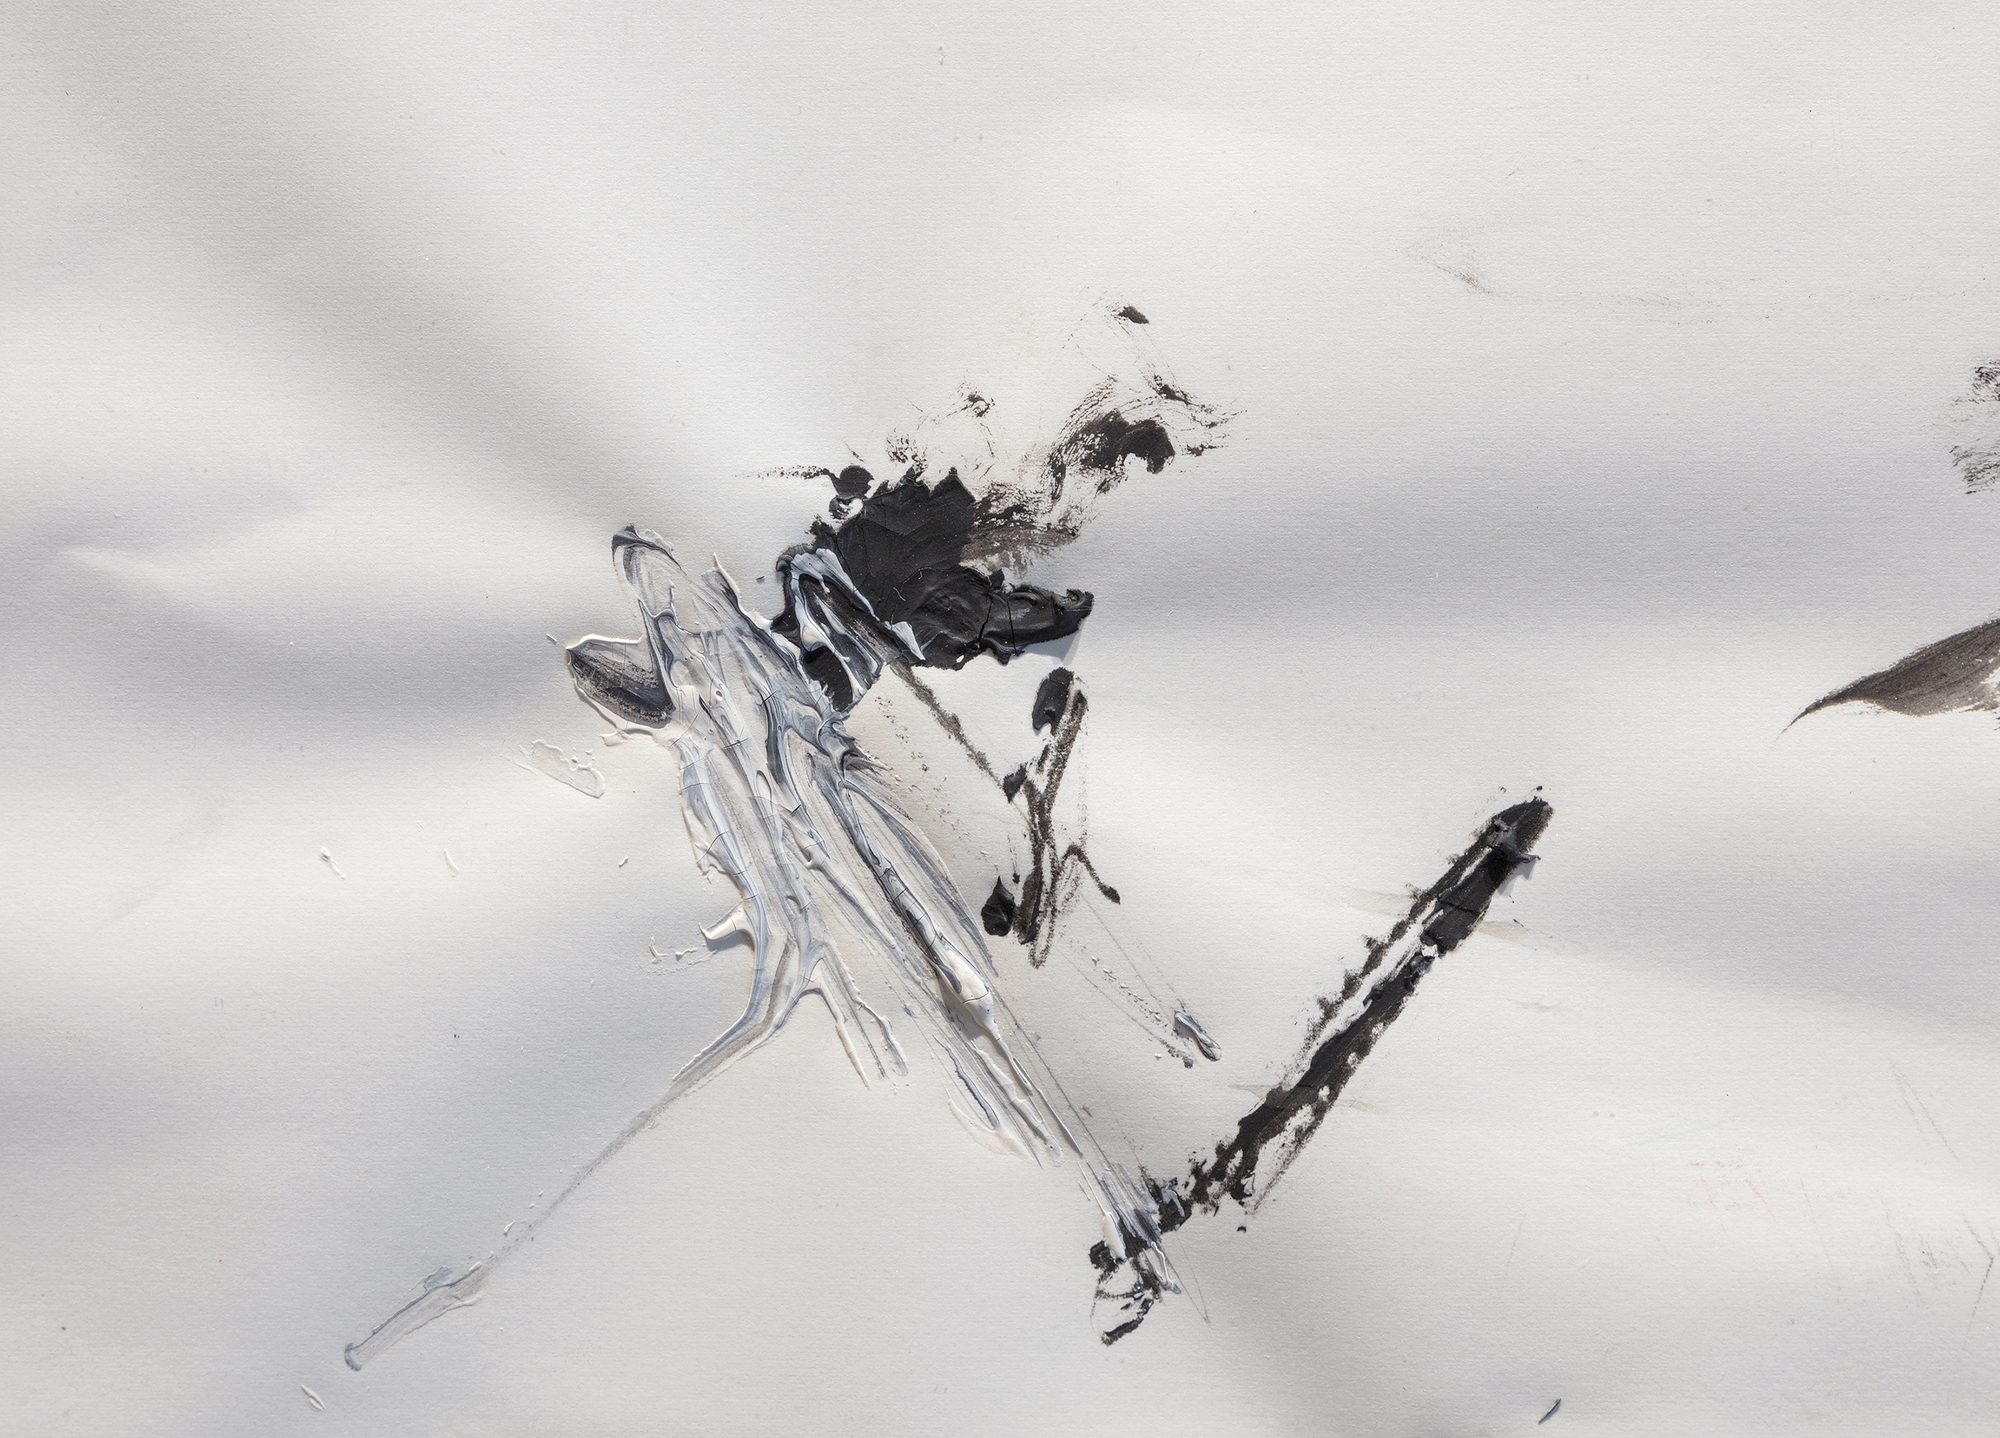 JEAN-MICHEL BASQUIAT - Sin título (Anatomía de una paloma) - óleo, grafito y tiza sobre papel - 22 x 30 pulg.